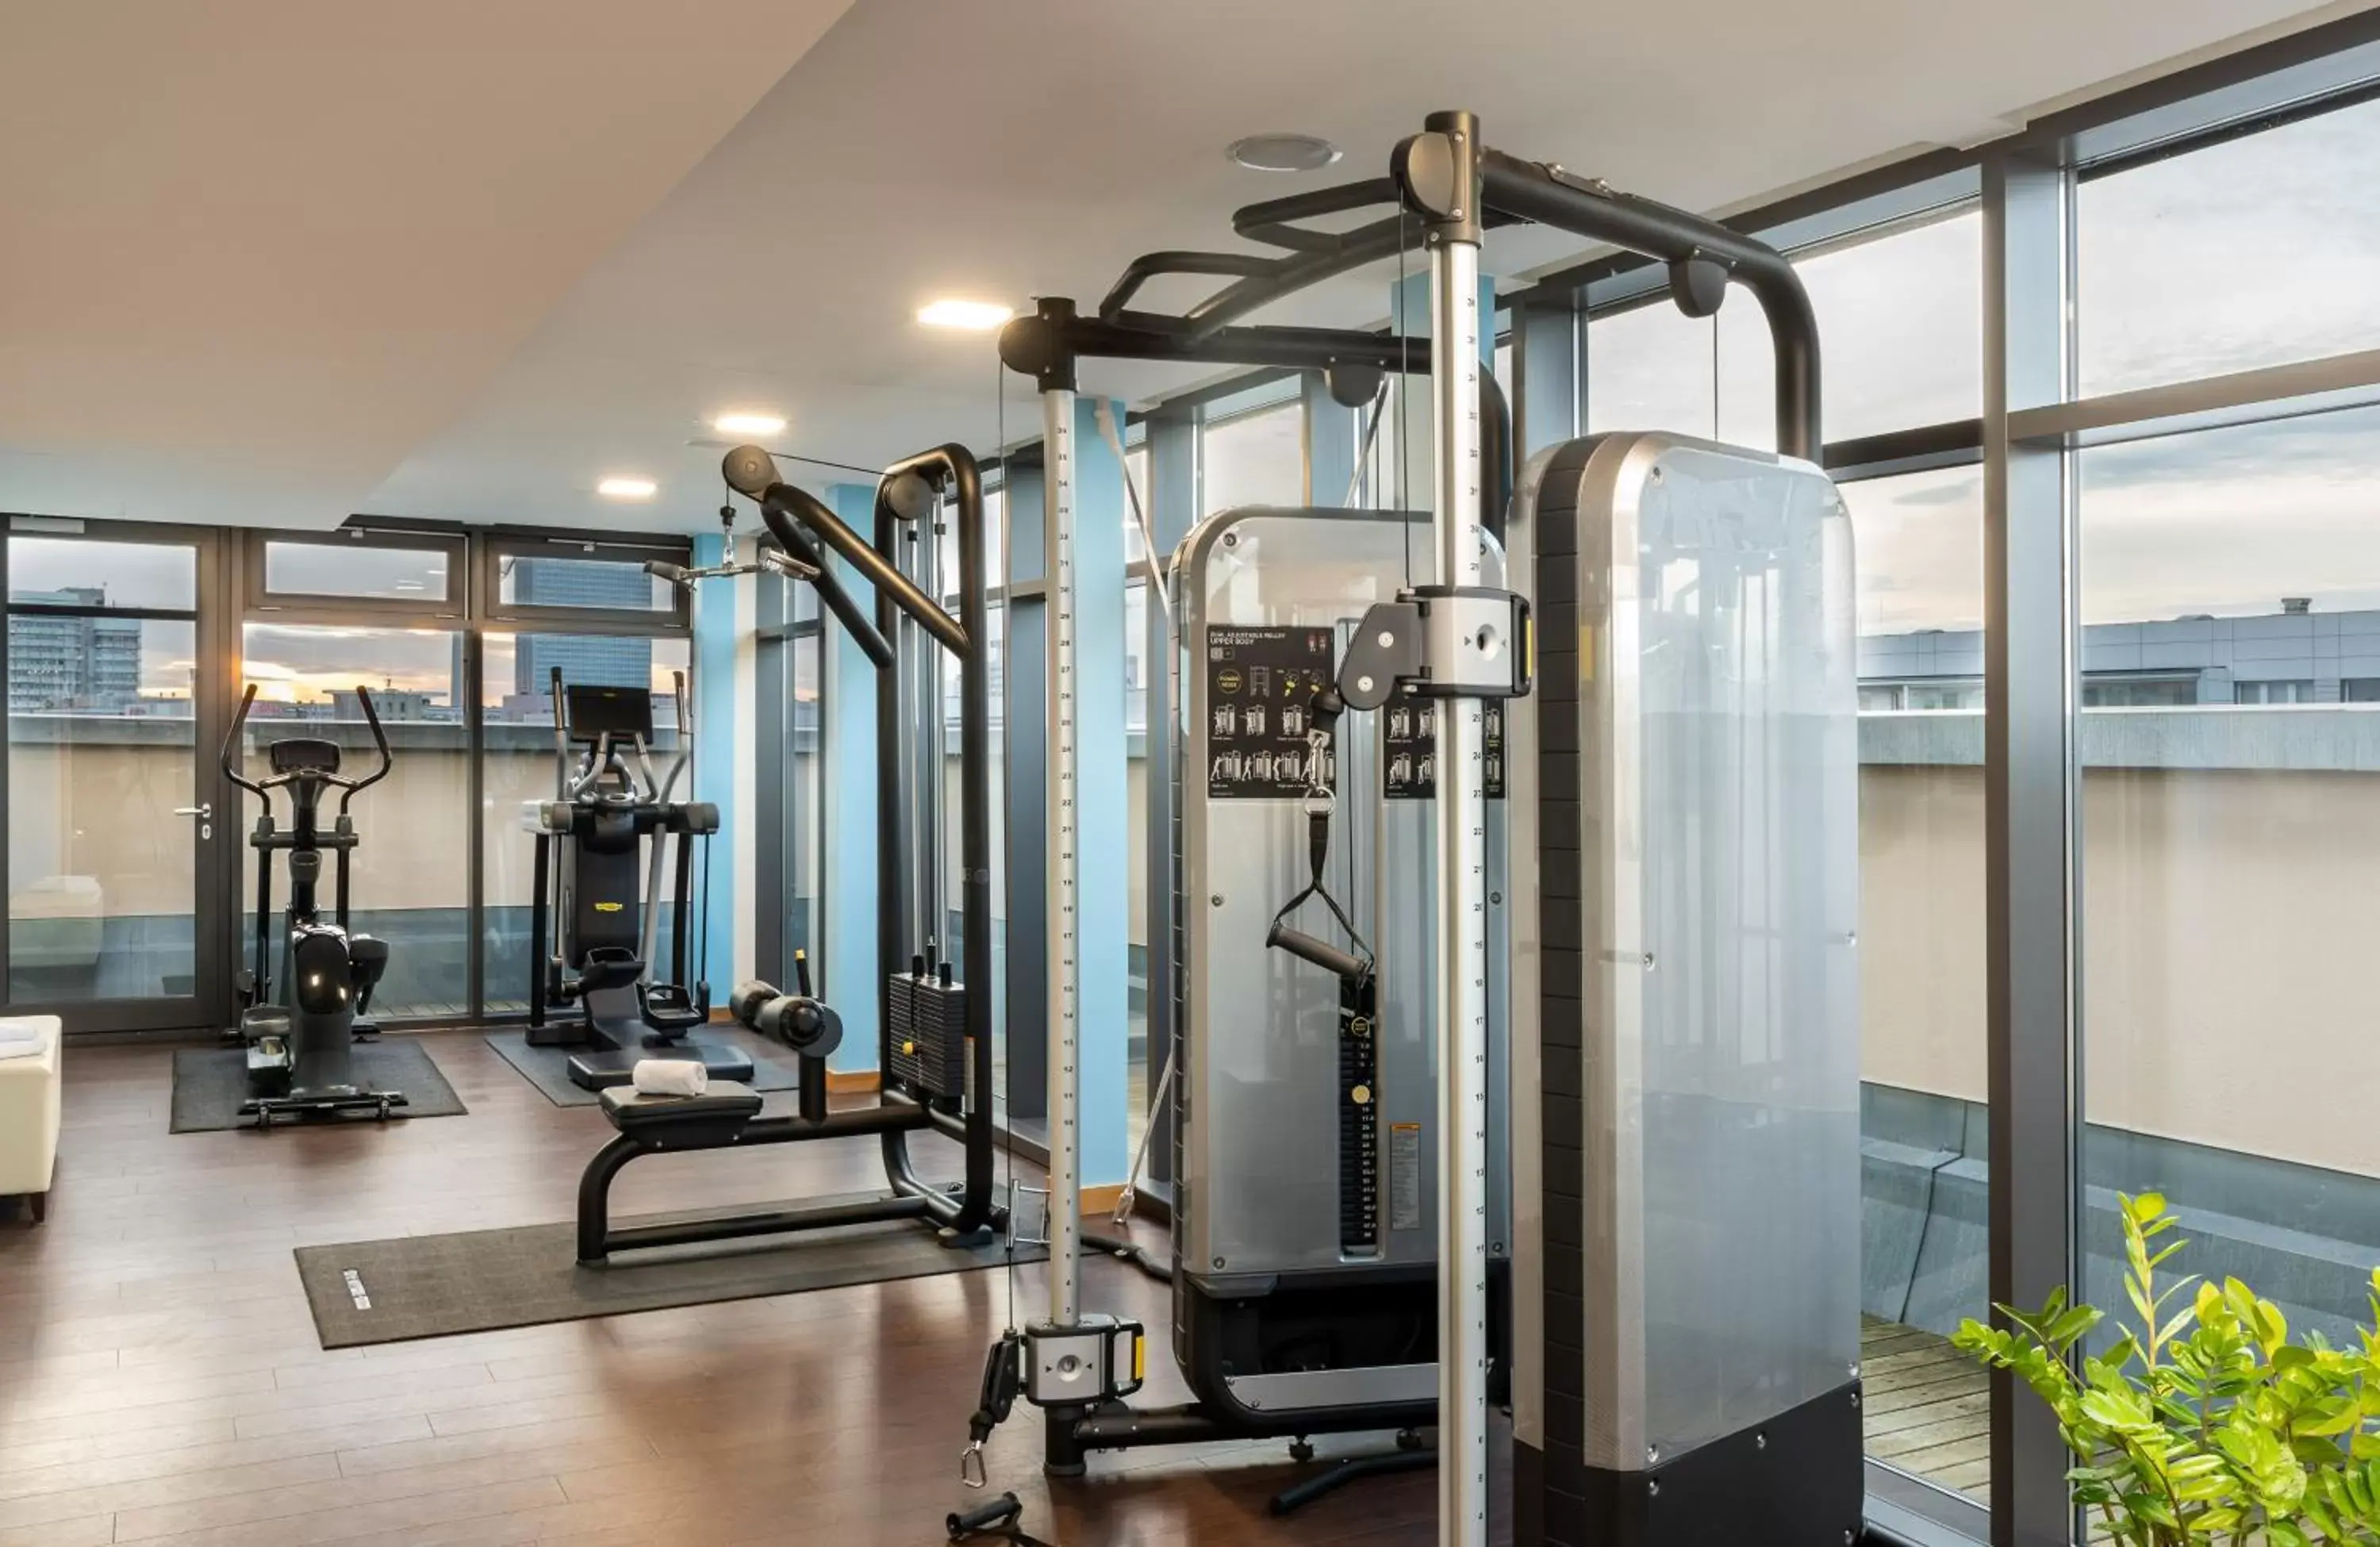 Fitness centre/facilities, Fitness Center/Facilities in Leonardo Royal Hotel Berlin Alexanderplatz